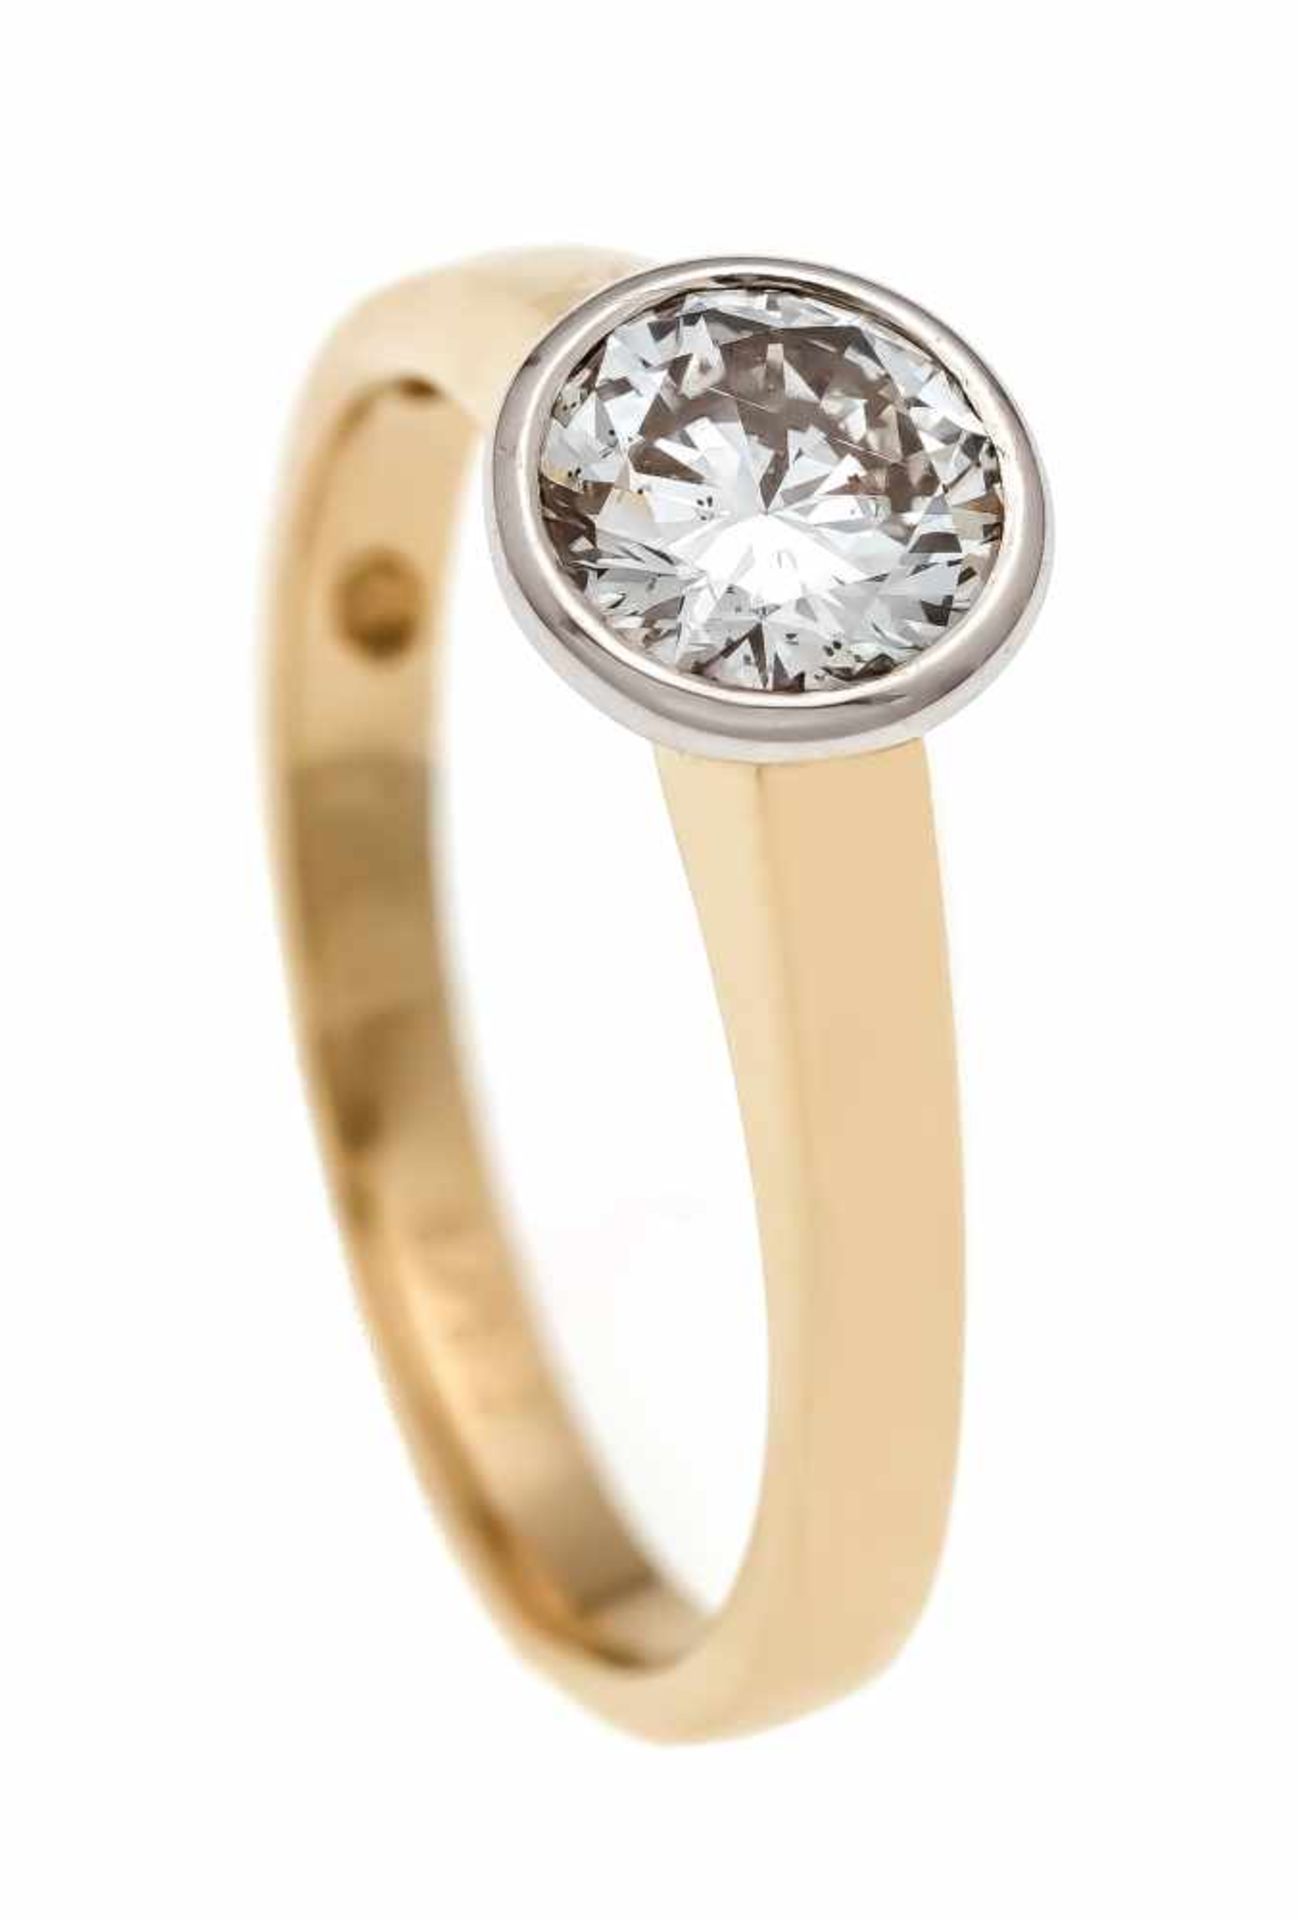 Brillant-Ring GG 585/000 mit einem Brillanten 0,97 ct feines Weiß (G)/SI2 (punziert), RG56, 3,3 g